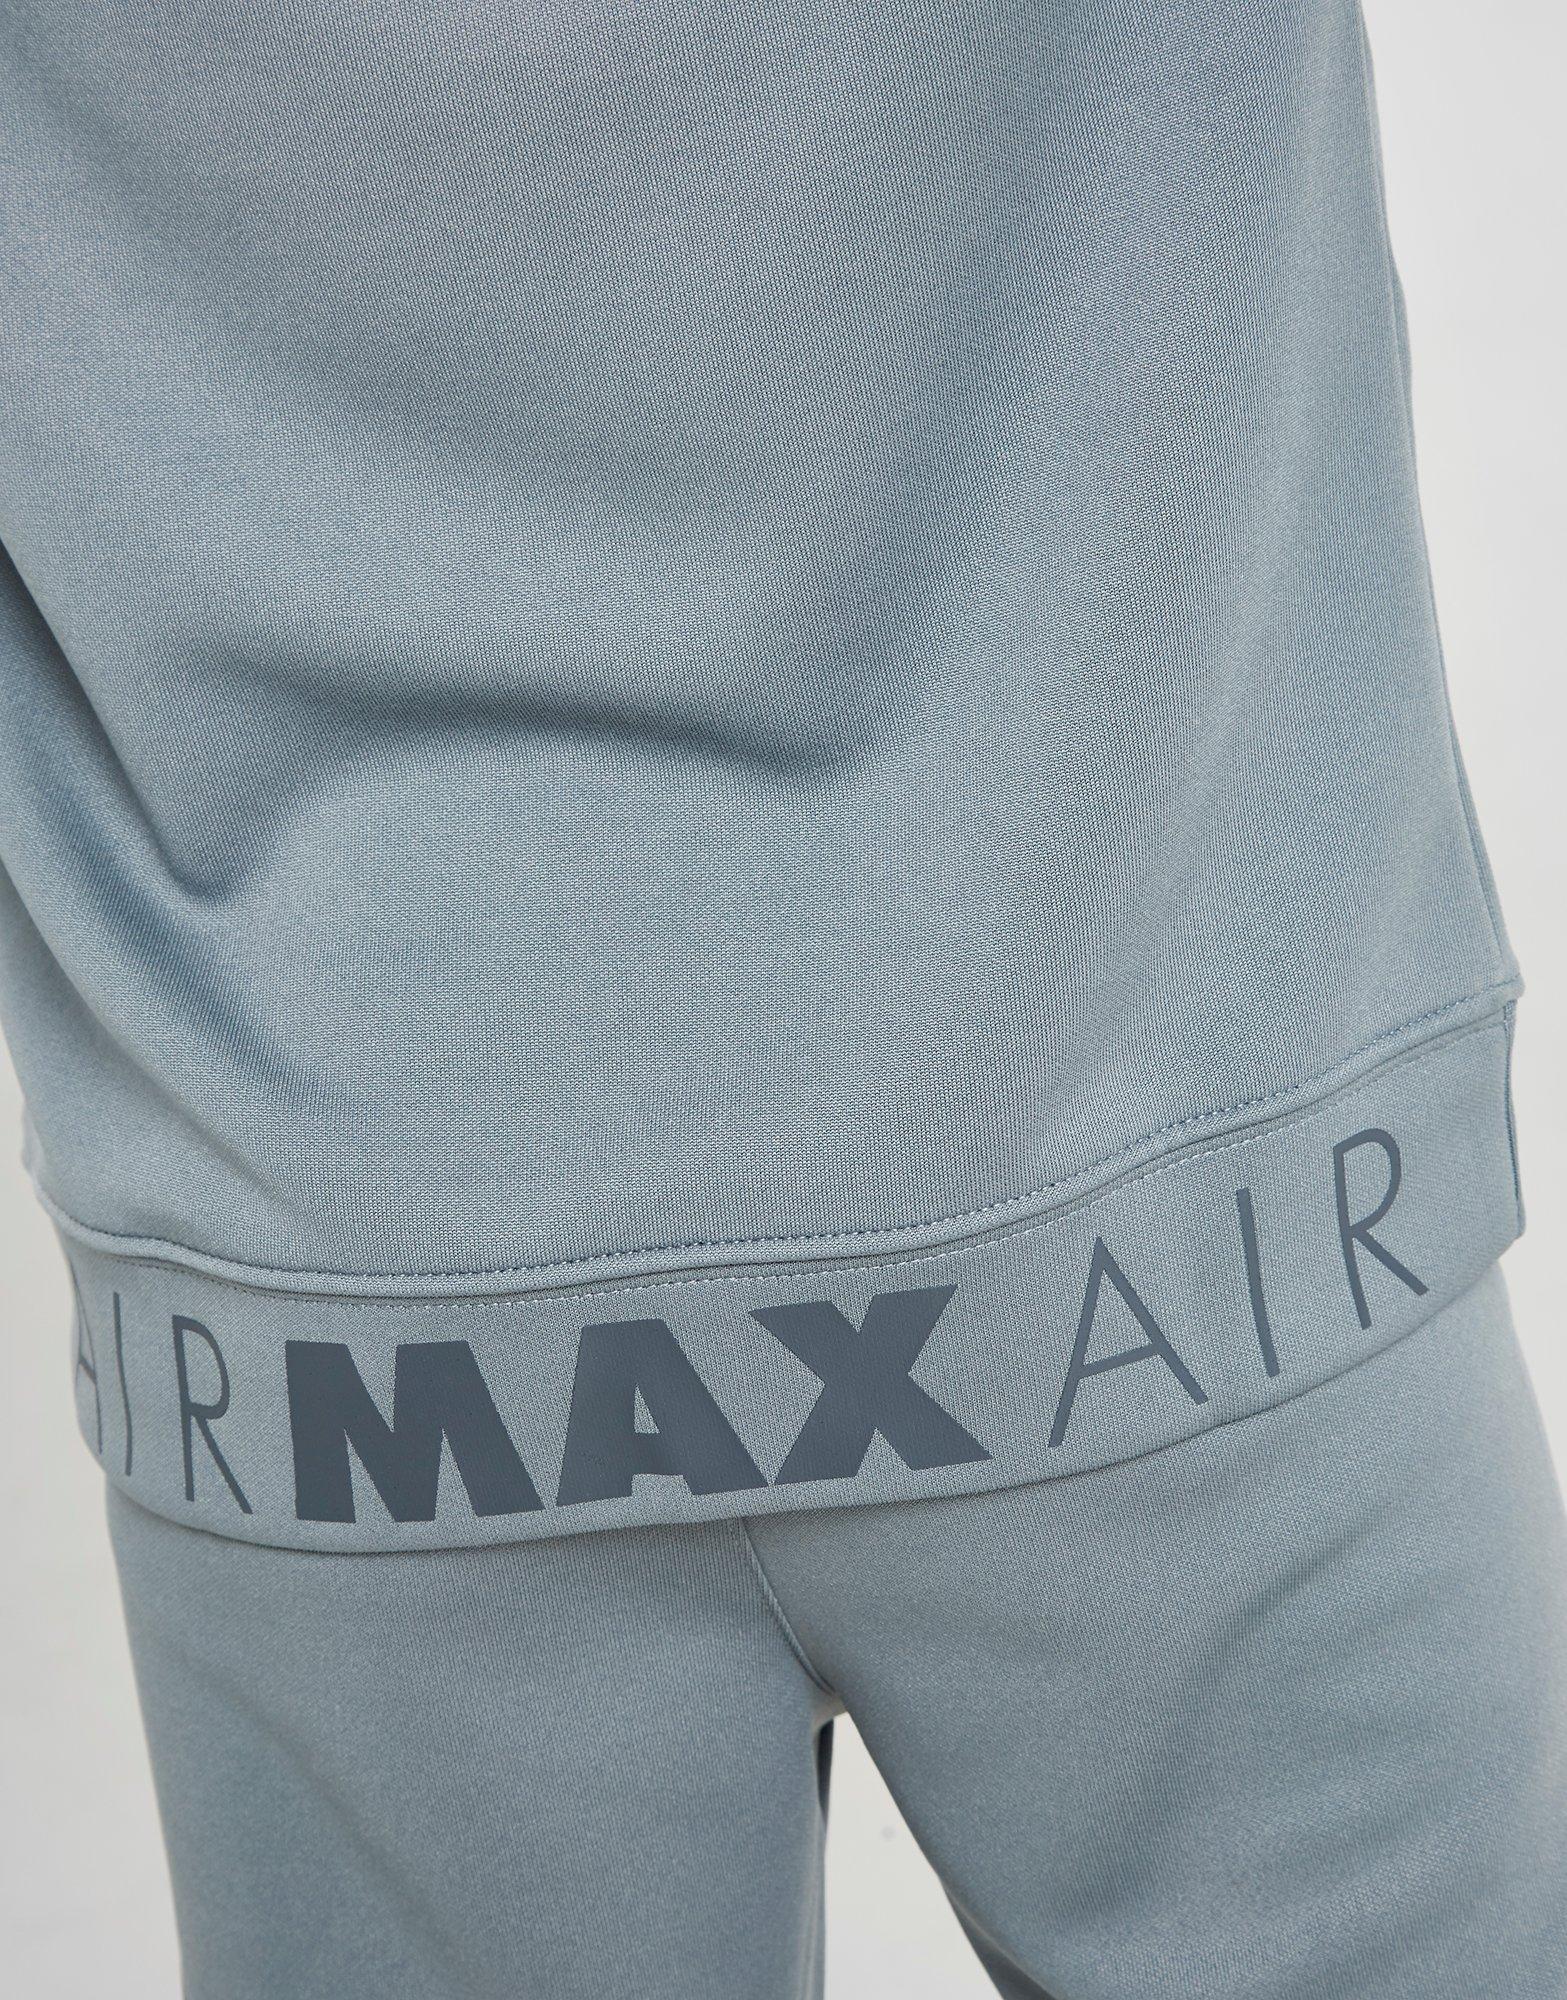 grey nike air max tracksuit